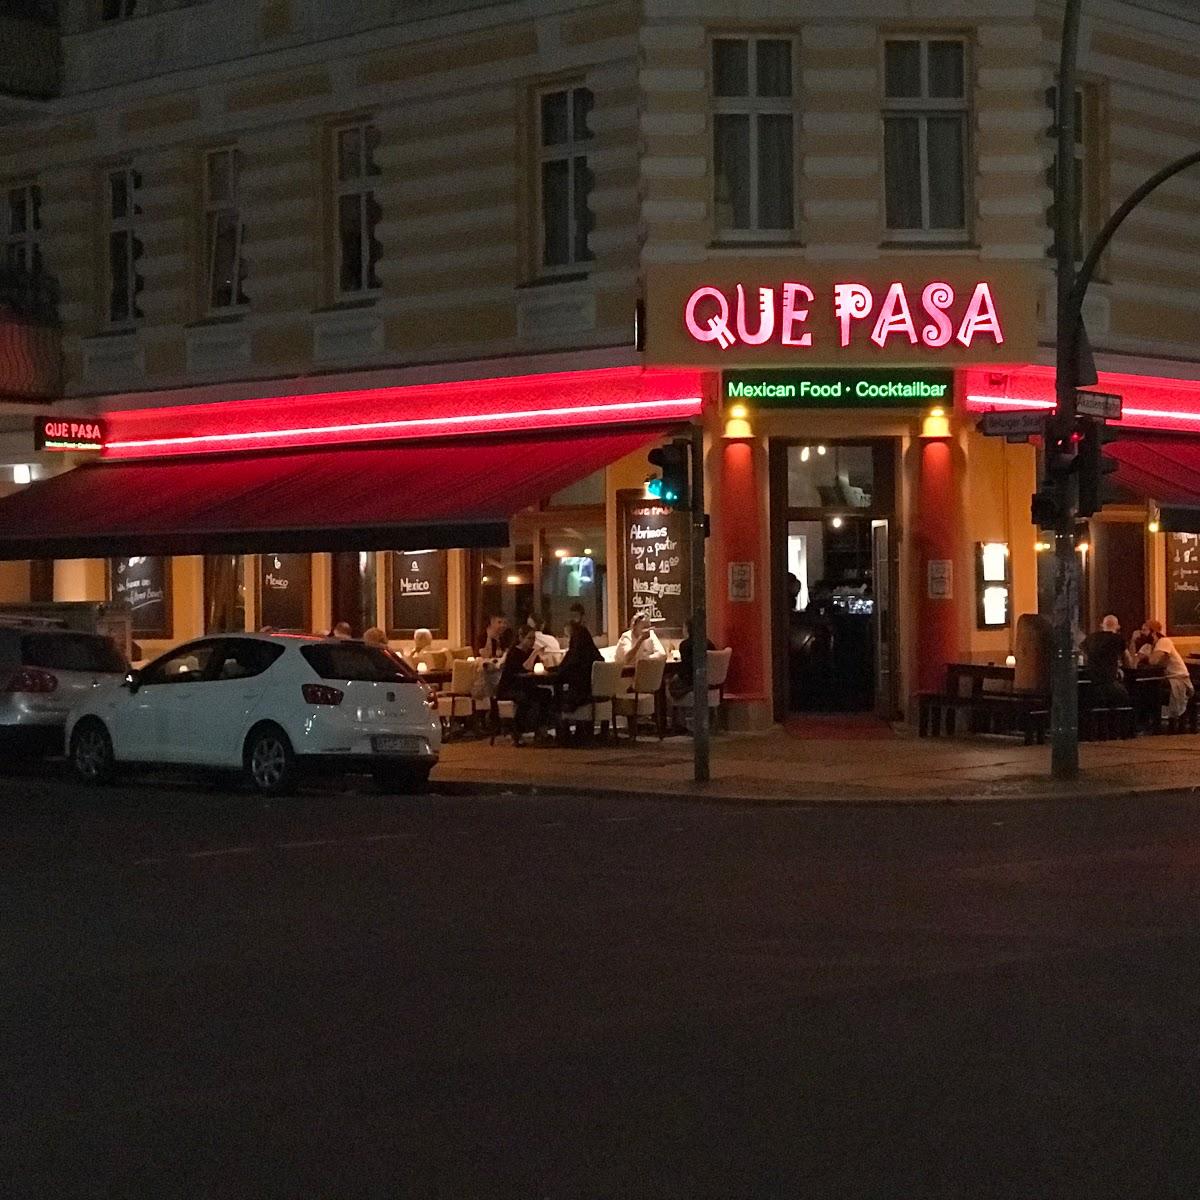 Restaurant "Que Pasa" in Berlin